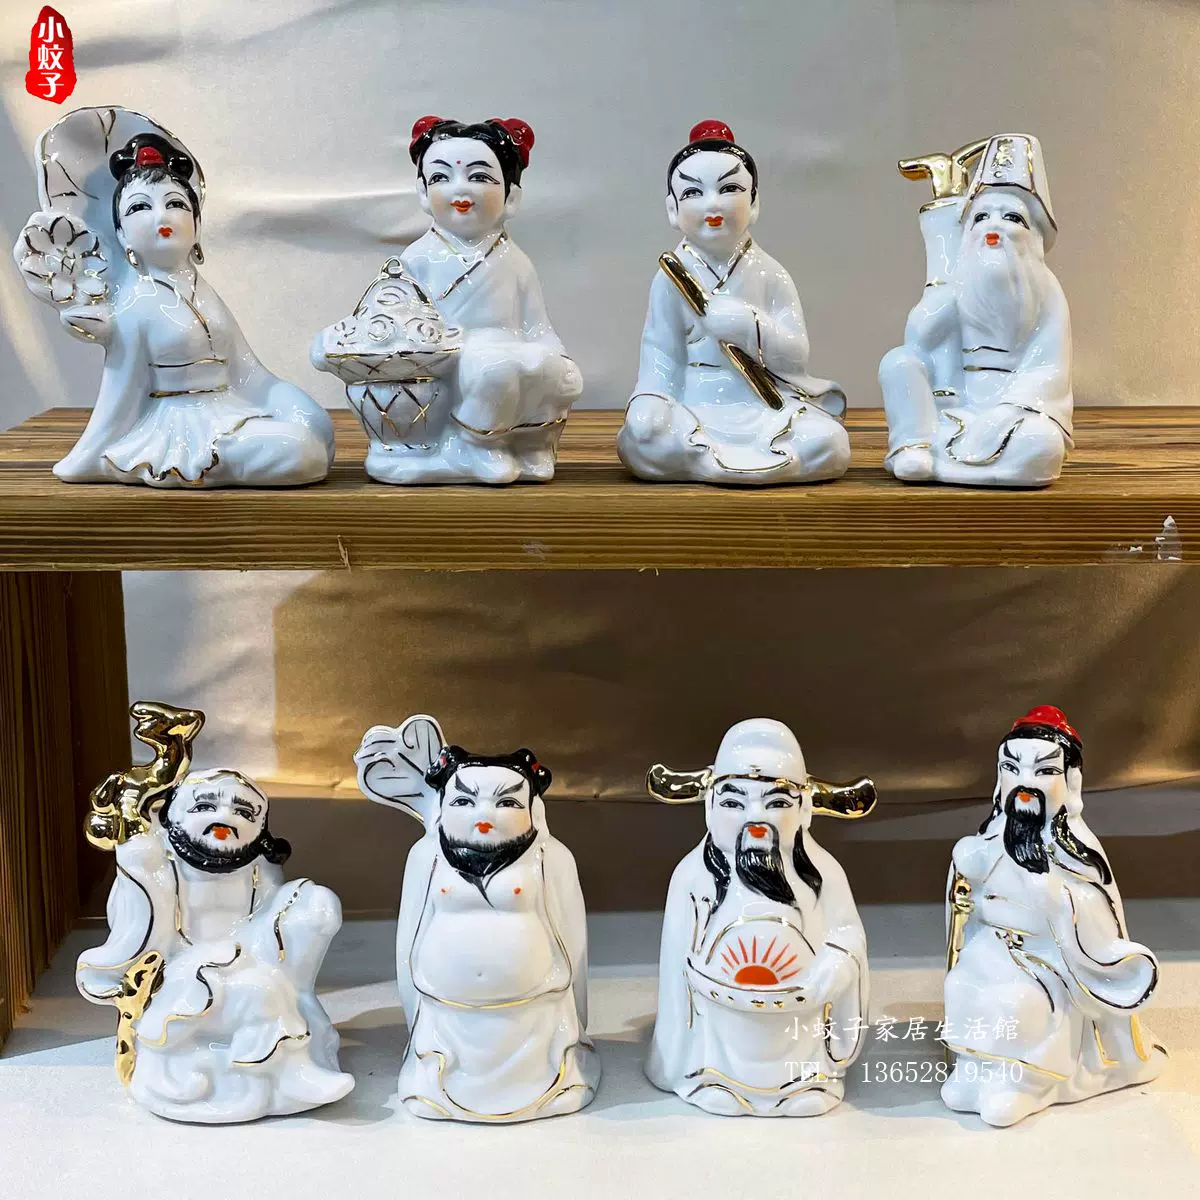 創意迷你全套白玉八仙陶瓷八仙過海人物絕版工藝品擺飾家居擺設品-Taobao